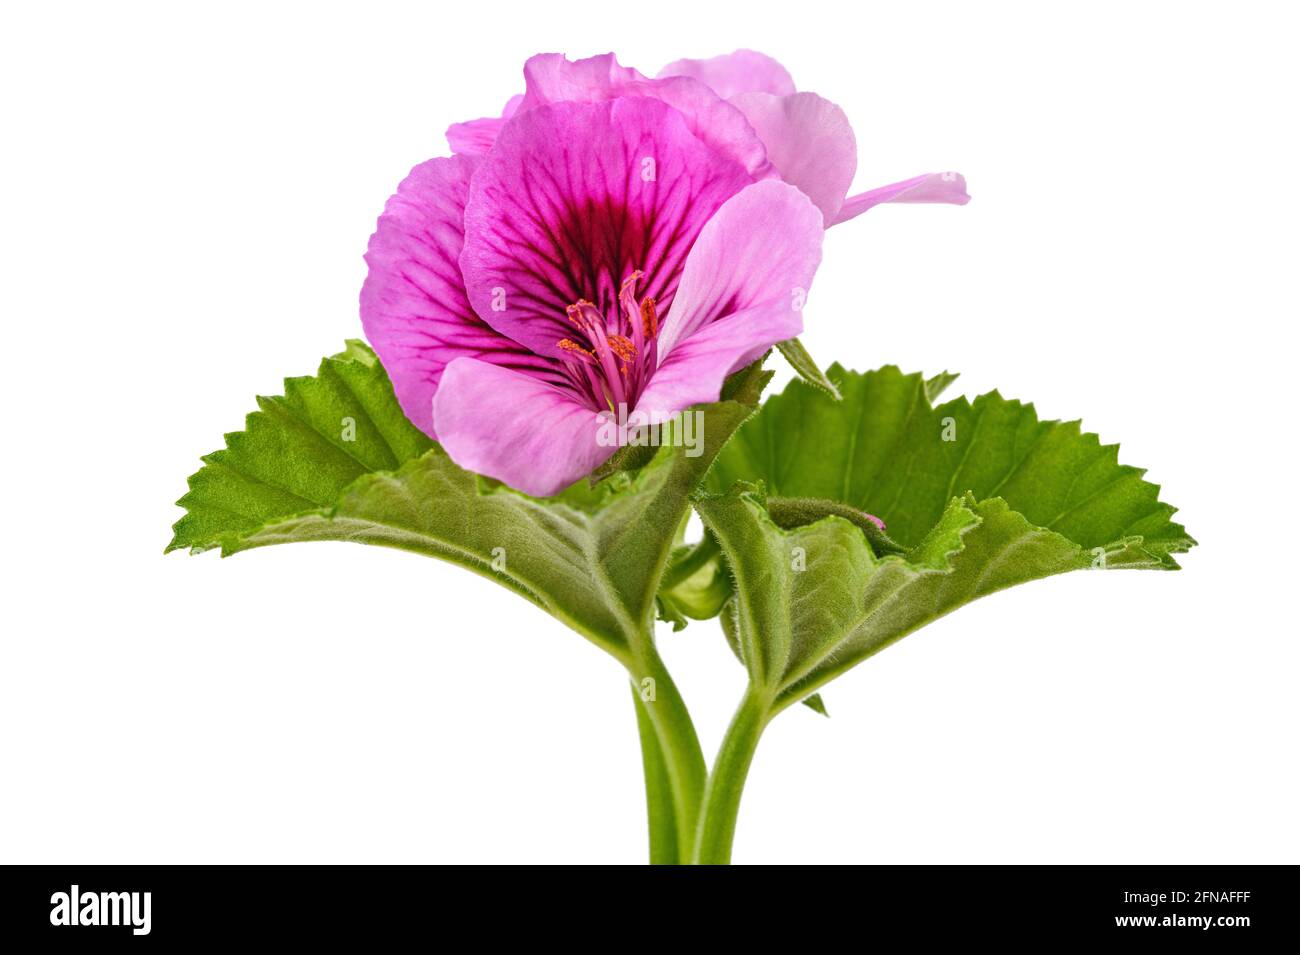 Geranium  flowers  isolated on white background Stock Photo